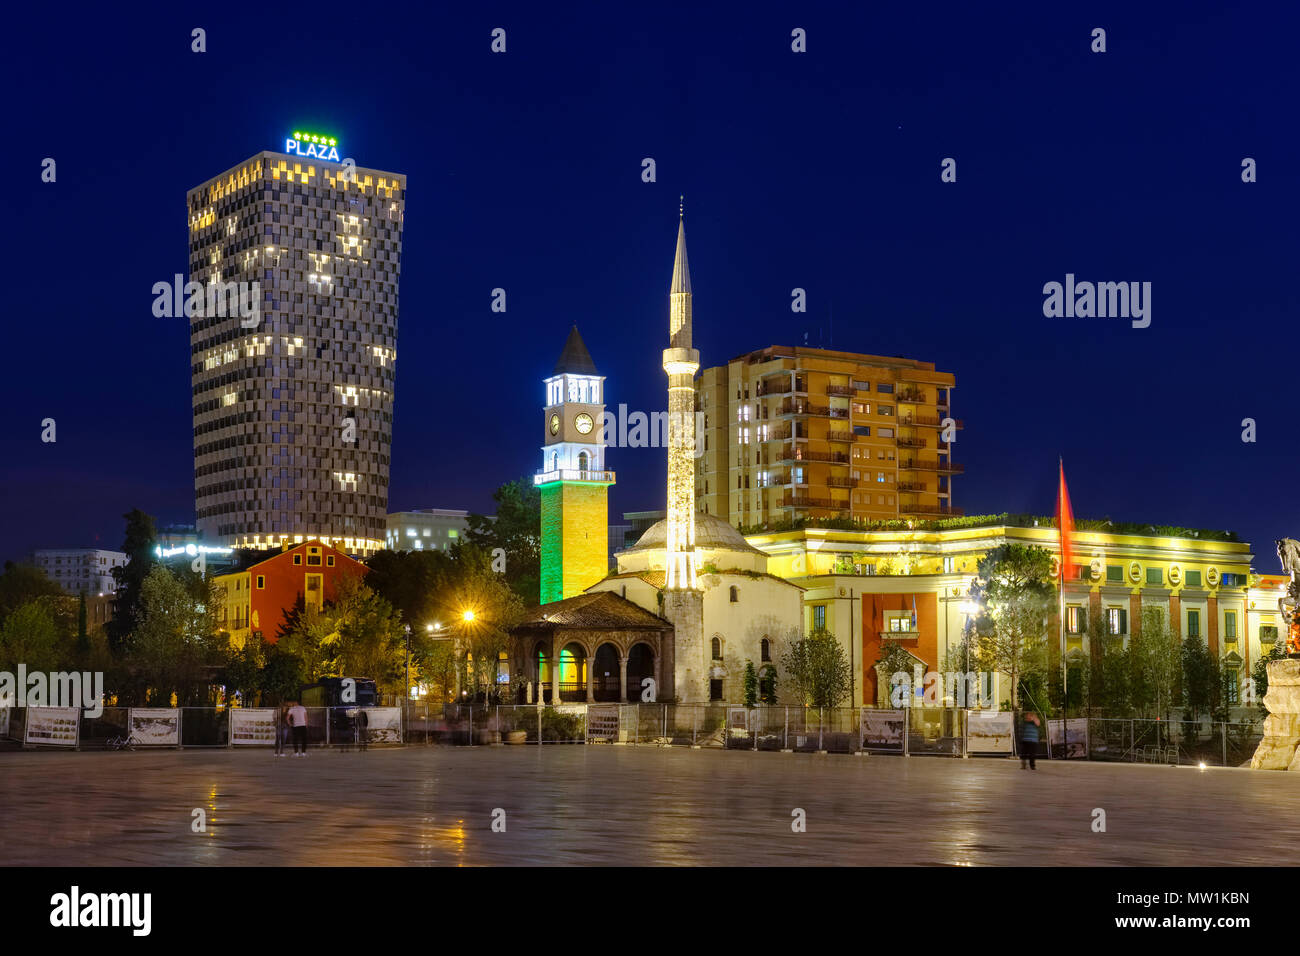 Skanderbeg Platz mit TID Tower Hotel Plaza, Ethem Bey Moschee und Uhrturm, Nachtaufnahme, Tirana, Albanien Stockfoto